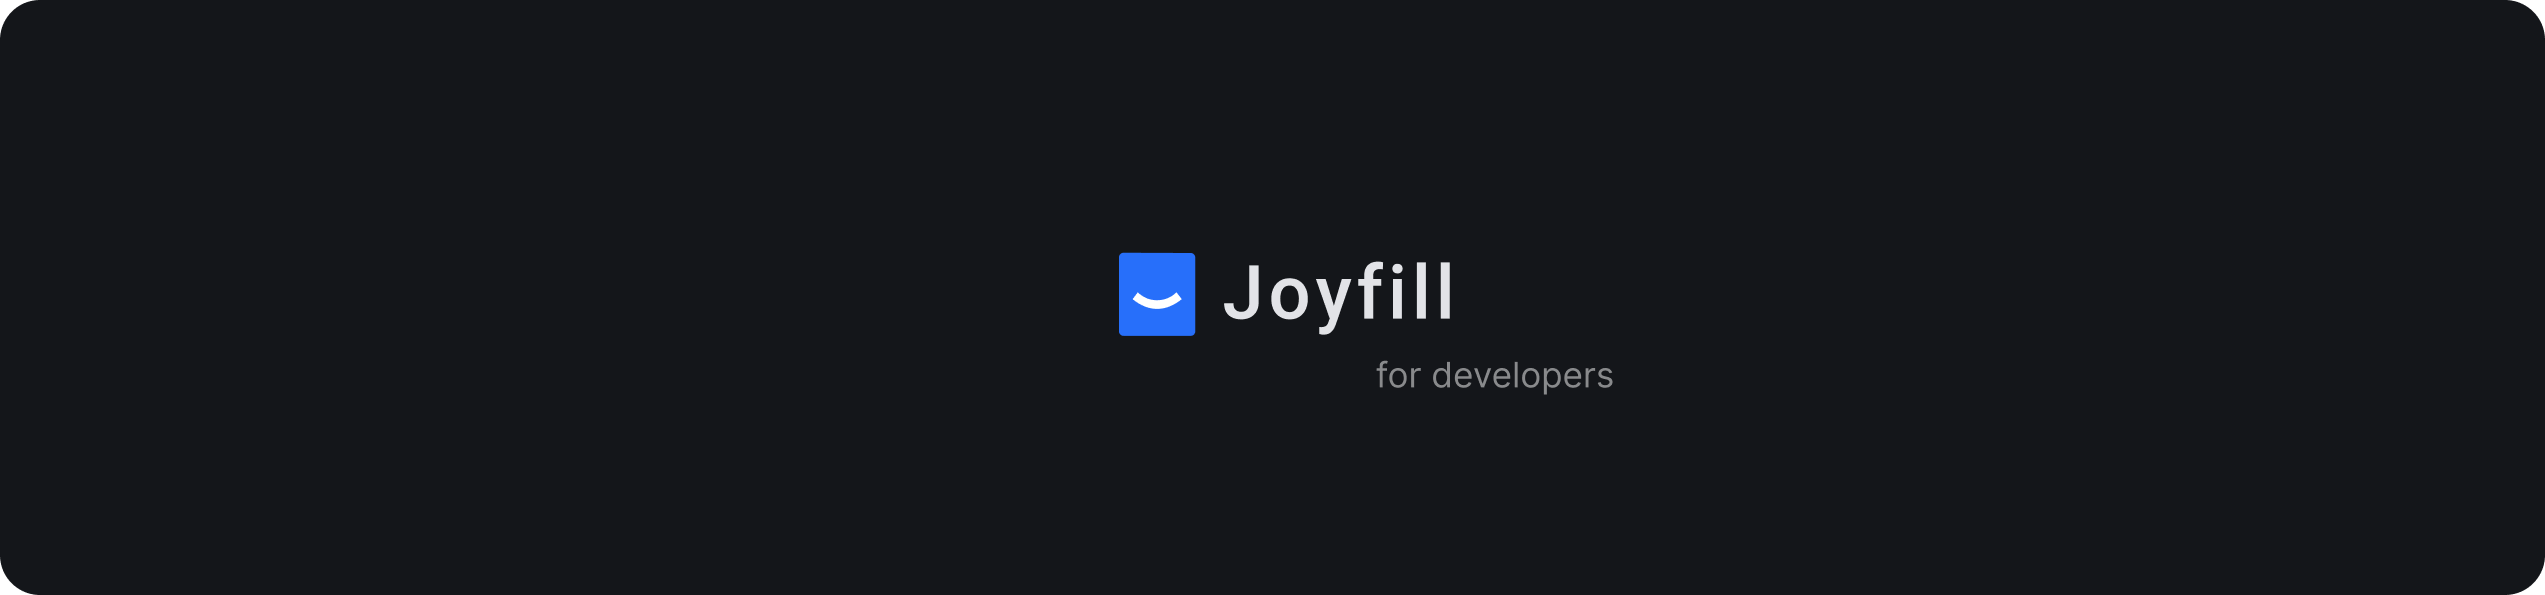 joyfill_logo